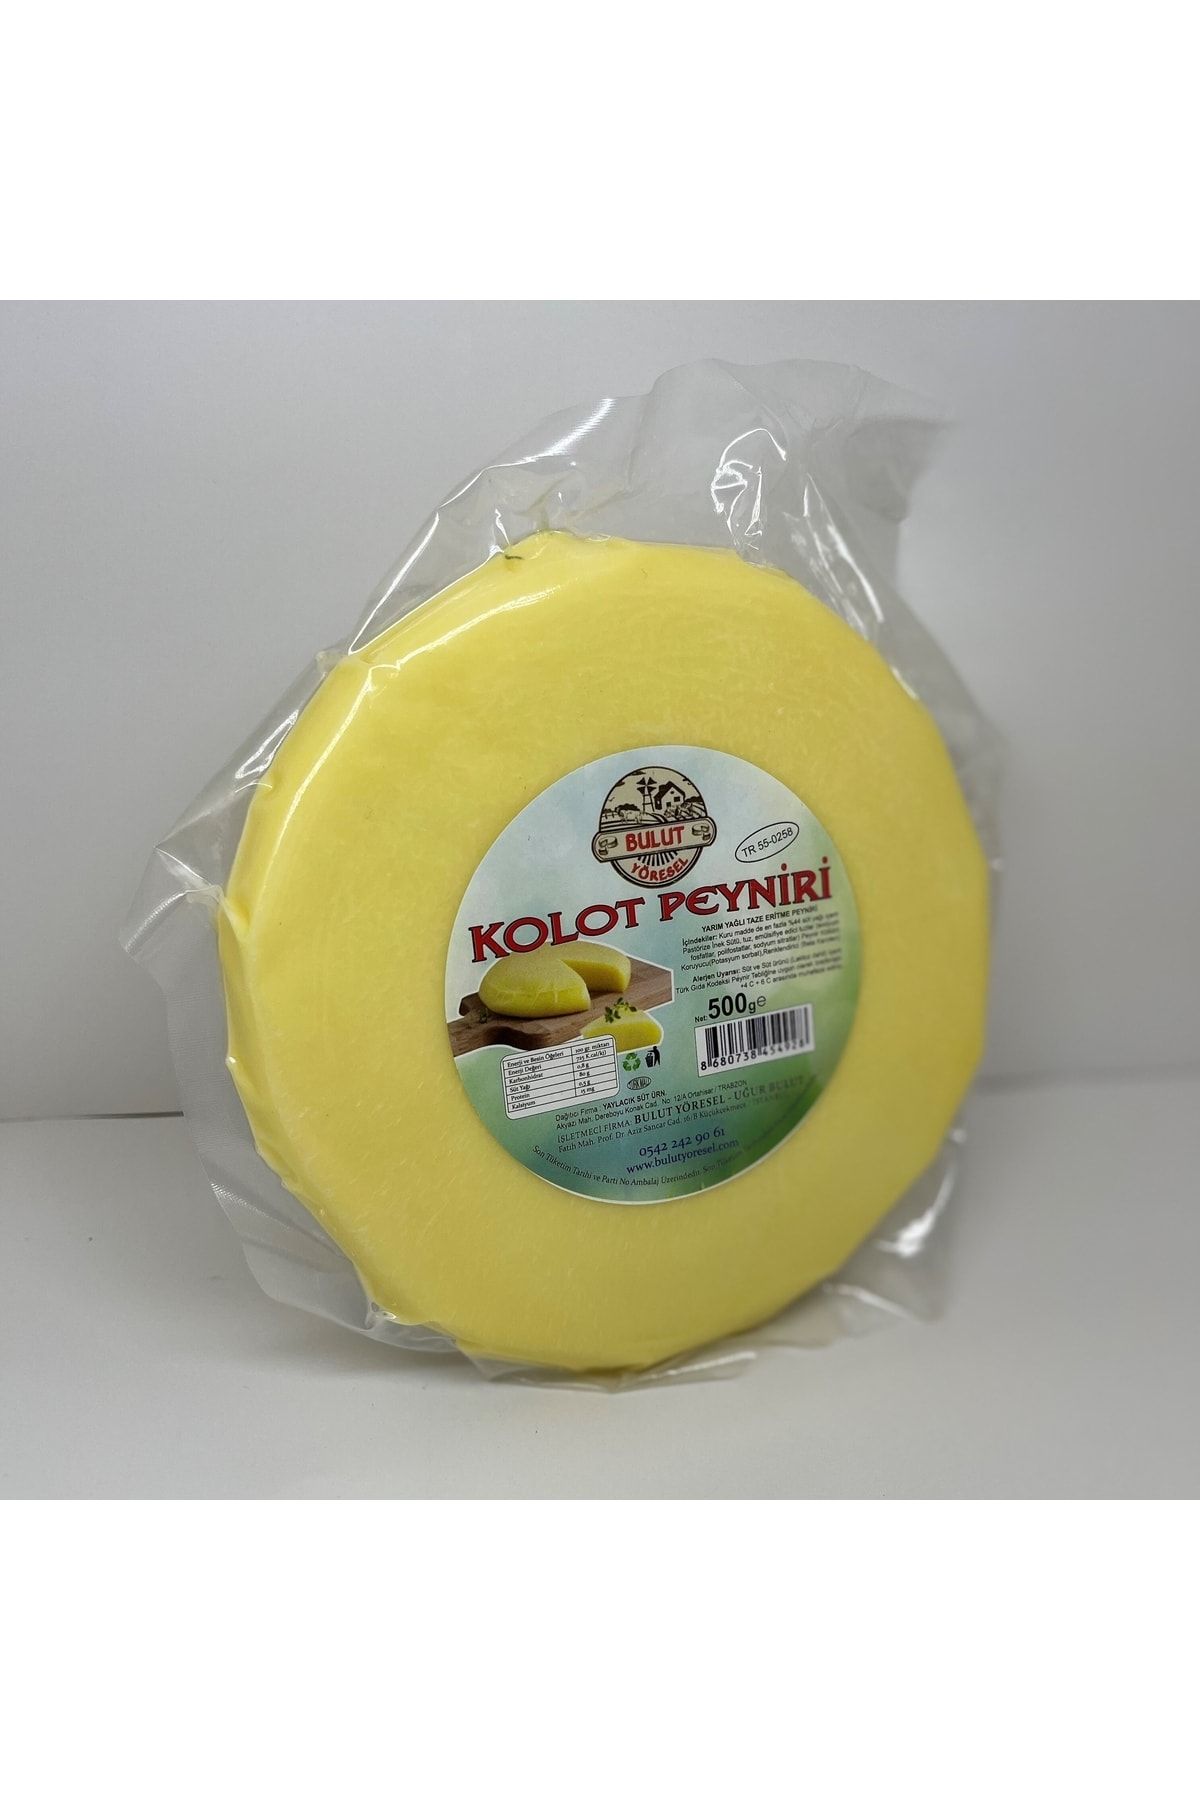 BULUT YÖRESEL Trabzon Kolot Peynir (500gr)